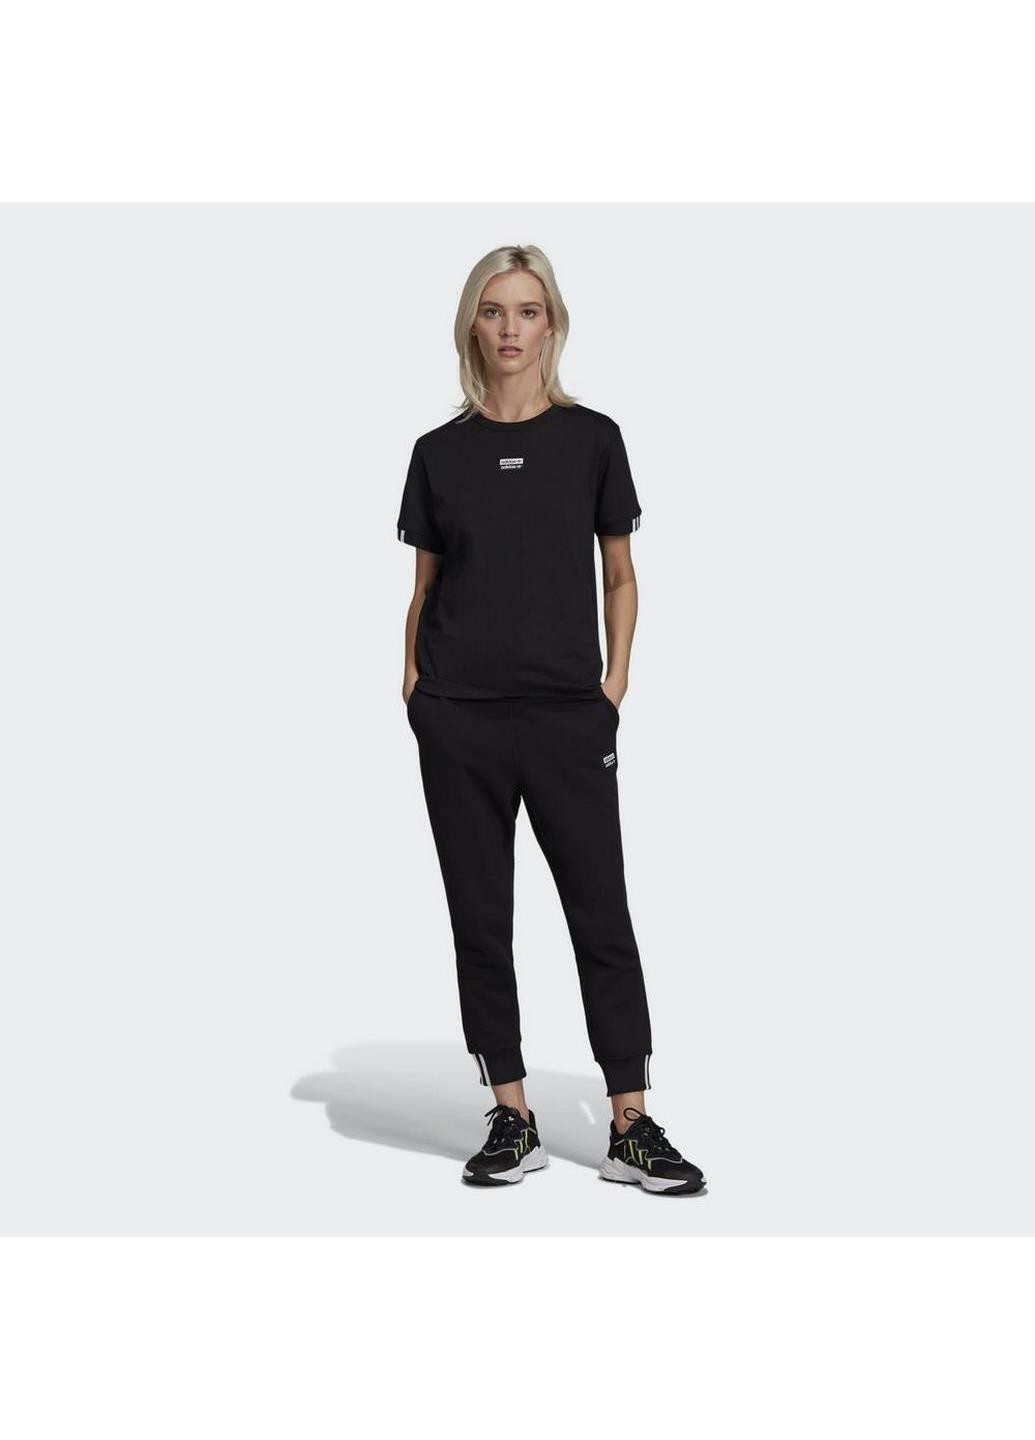 Жіночі спортивні штани PANT ED5851 adidas (267407499)